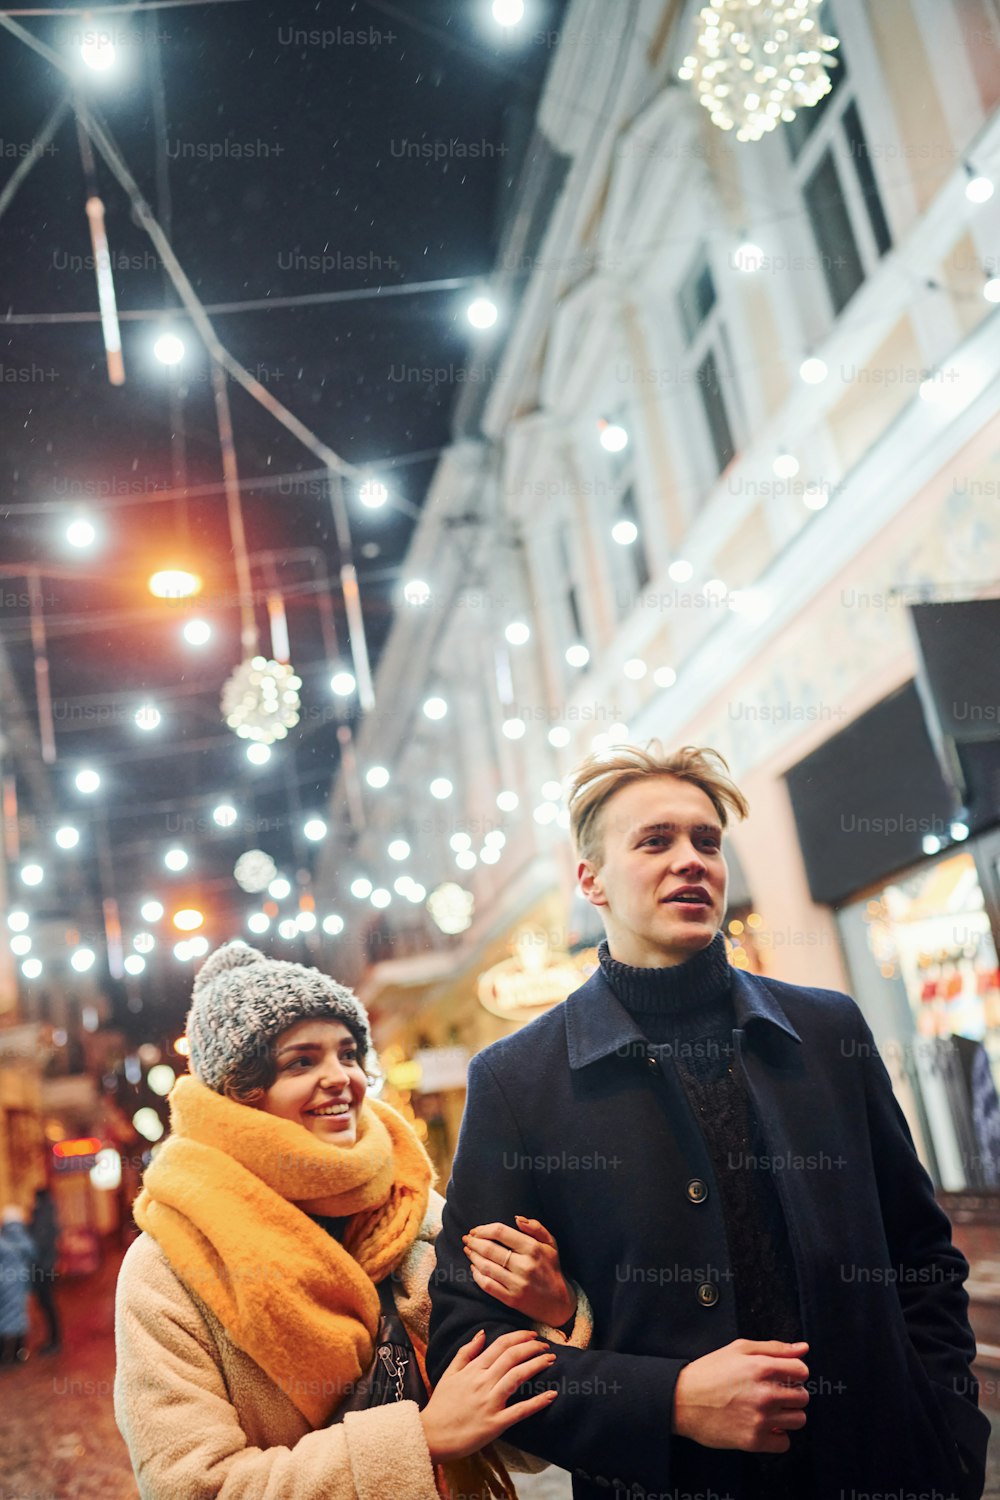 La coppia fa una passeggiata insieme sulla strada decorata a Natale.